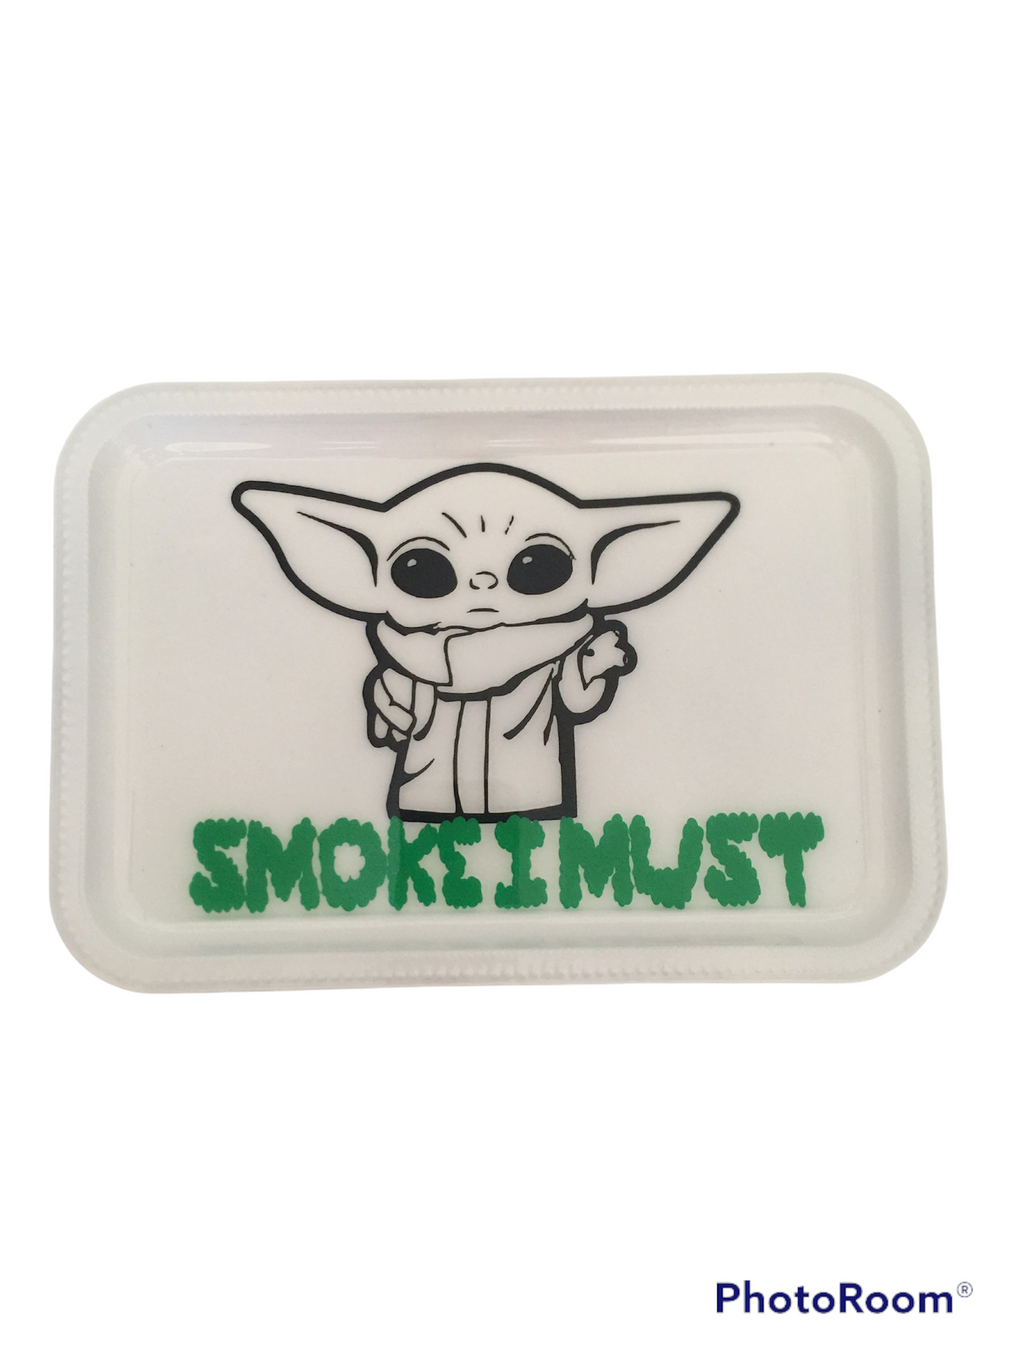 Yoda Rolling tray